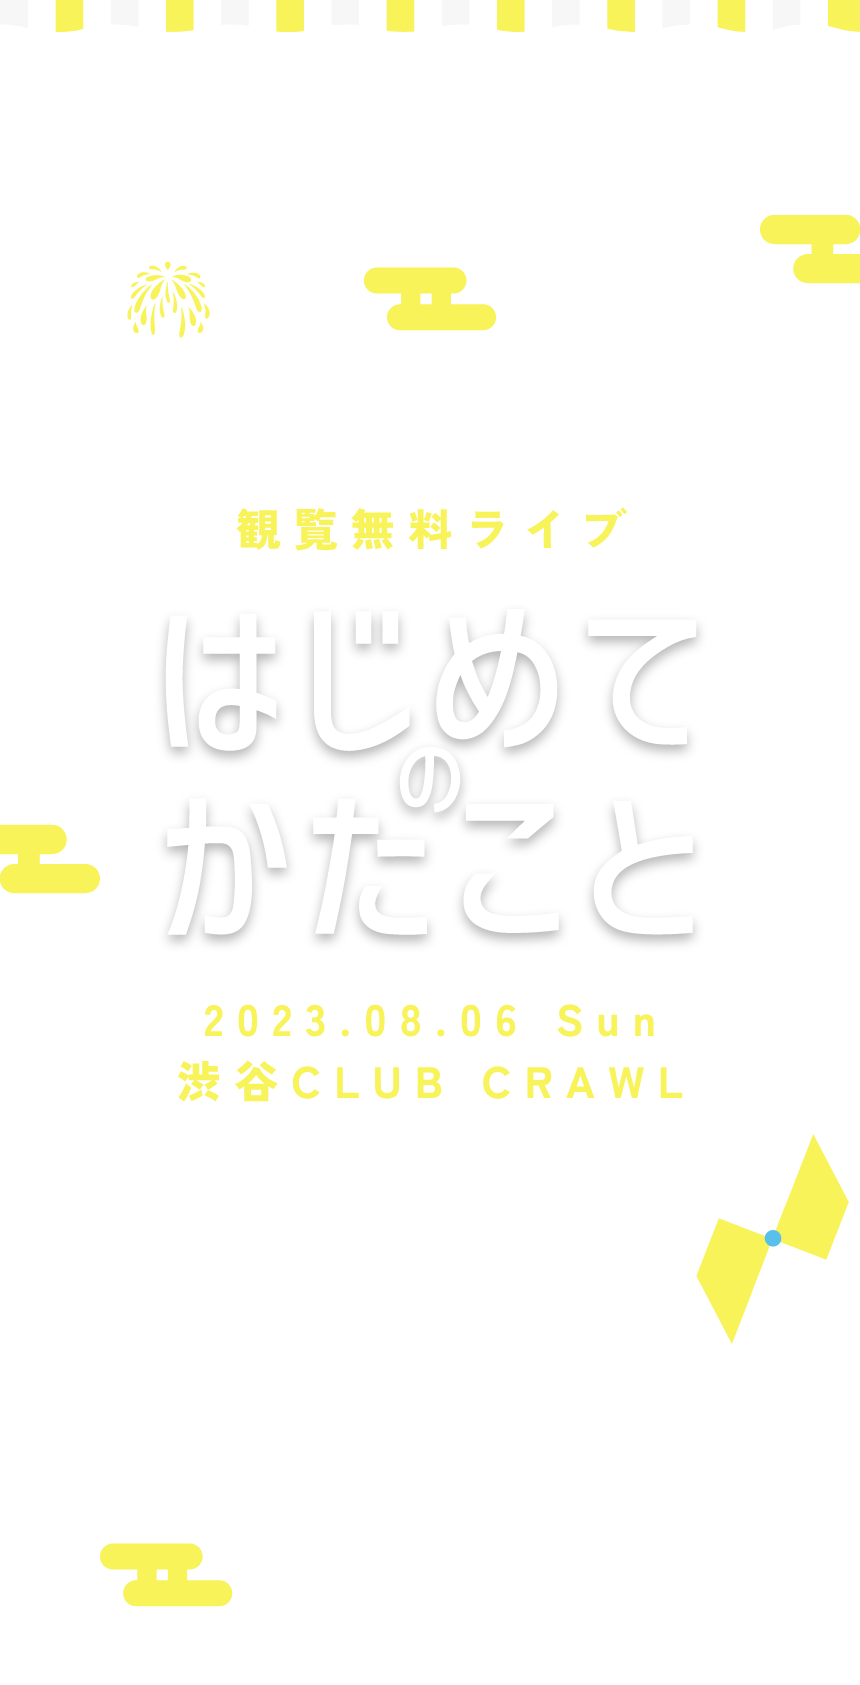 観覧無料ライブ,はじめてのかたこと,2023.08.06 Sun,渋谷CLUB CRAWL